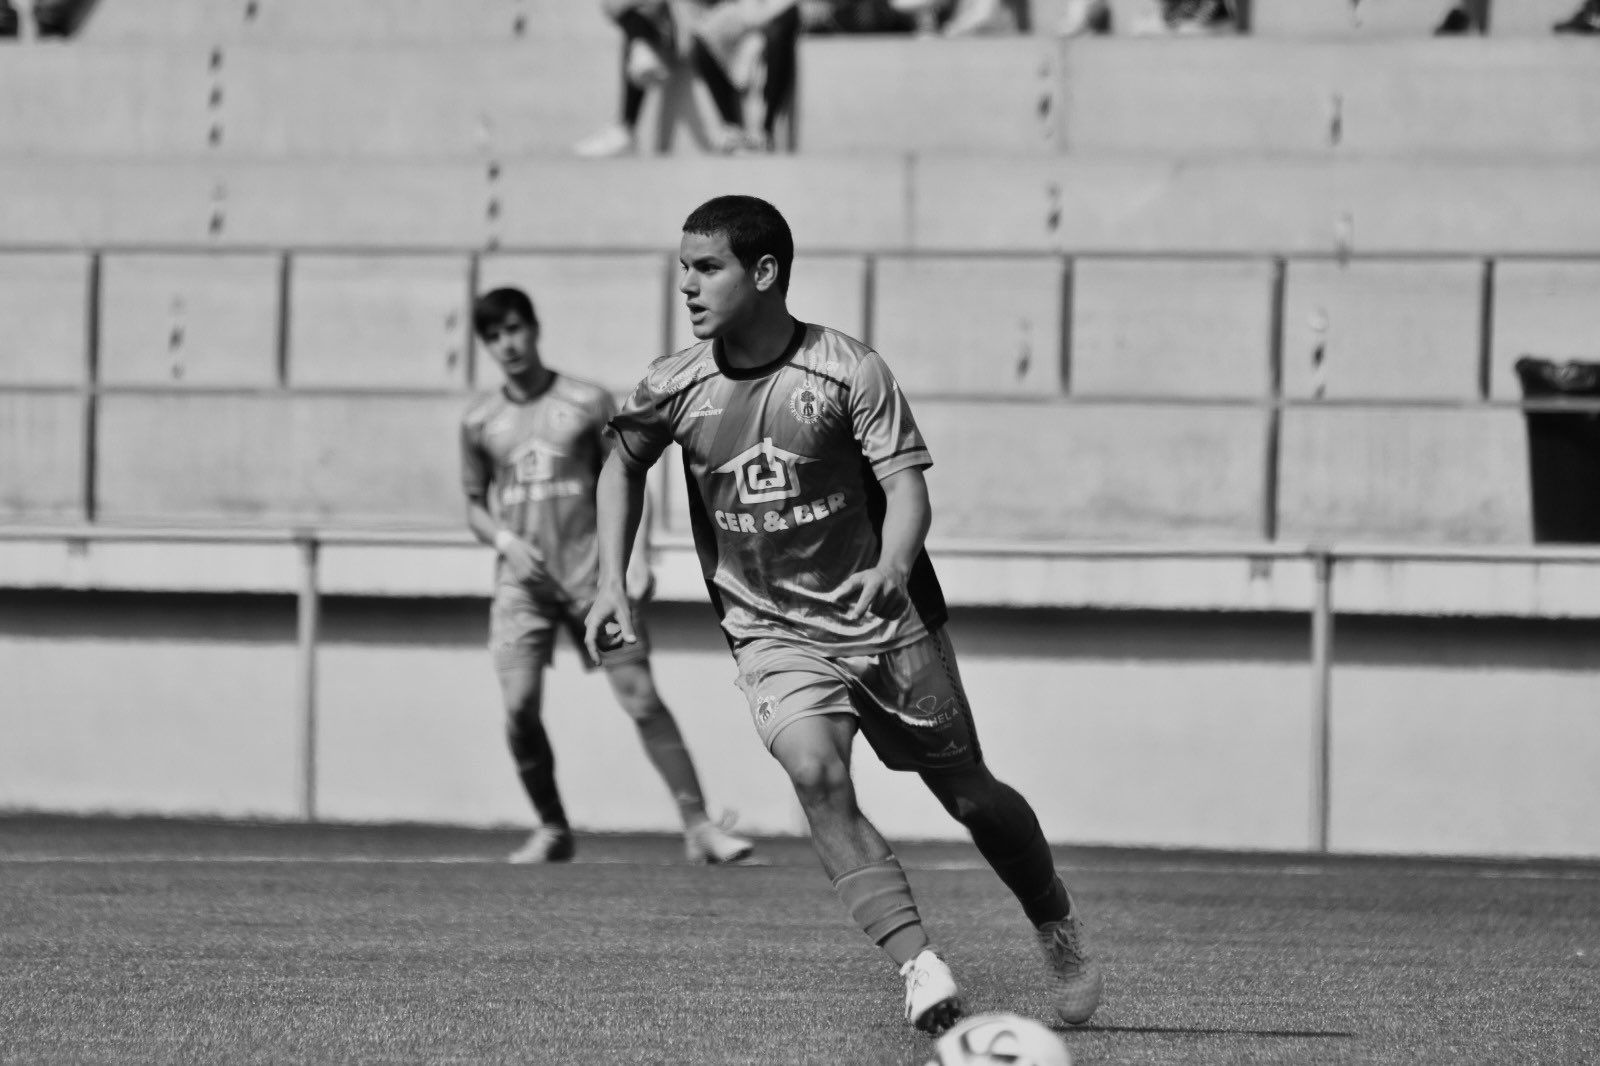 José Vicente, la joven promesa del fútbol que ha muerto inesperadamente a los 20 años